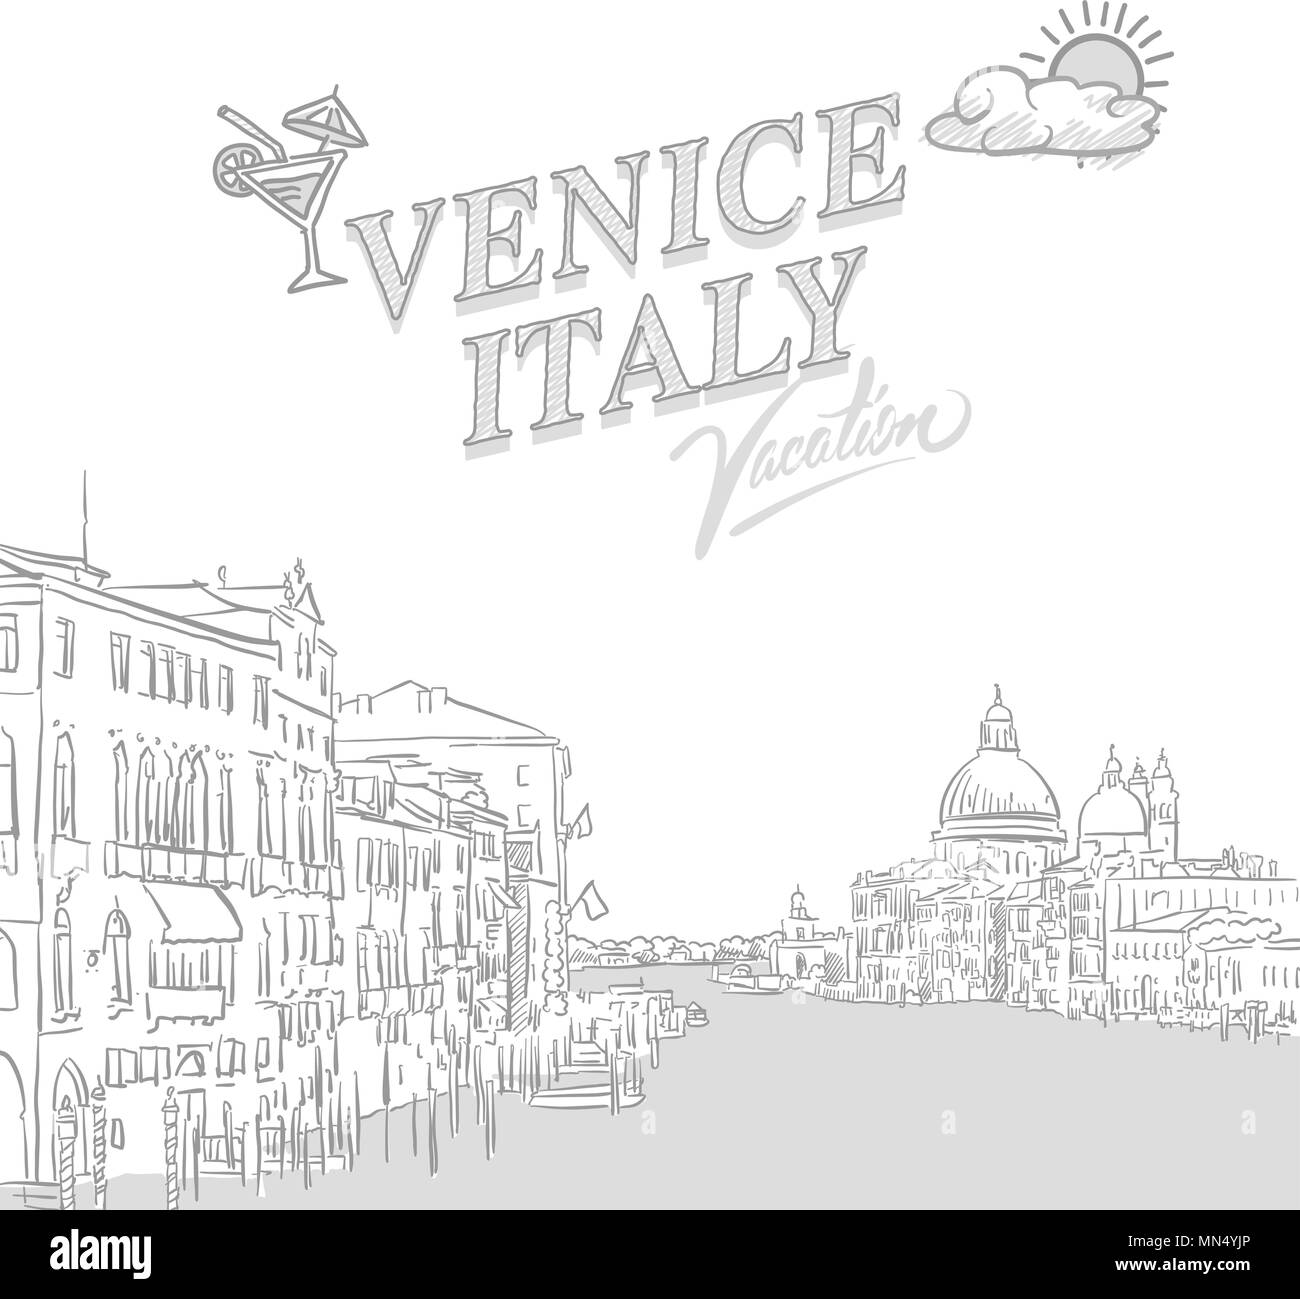 Venezia travel marketing coperchio, set di disegnato a mano un vettore schizzi Illustrazione Vettoriale